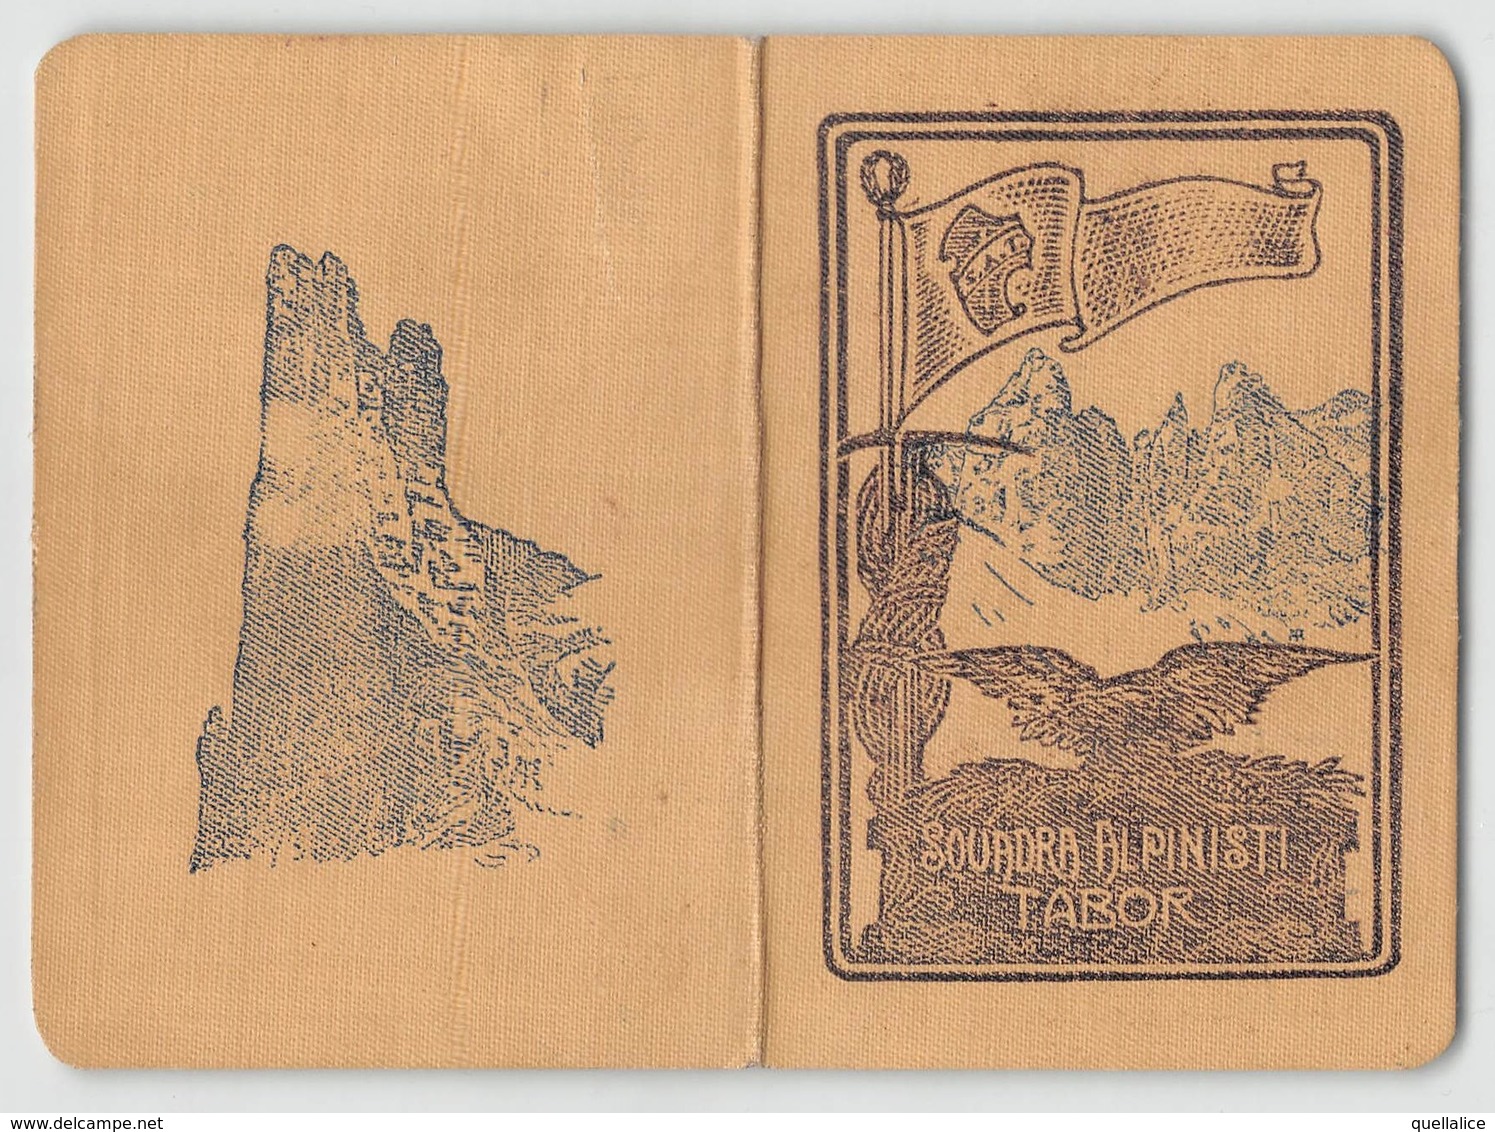 0879 "TORINO - SQUADRA ALPINISTI TABOR - TESSERA RICONOSCIMENTO SOCIO DEL 1933"  ORIGINALE - Wintersport